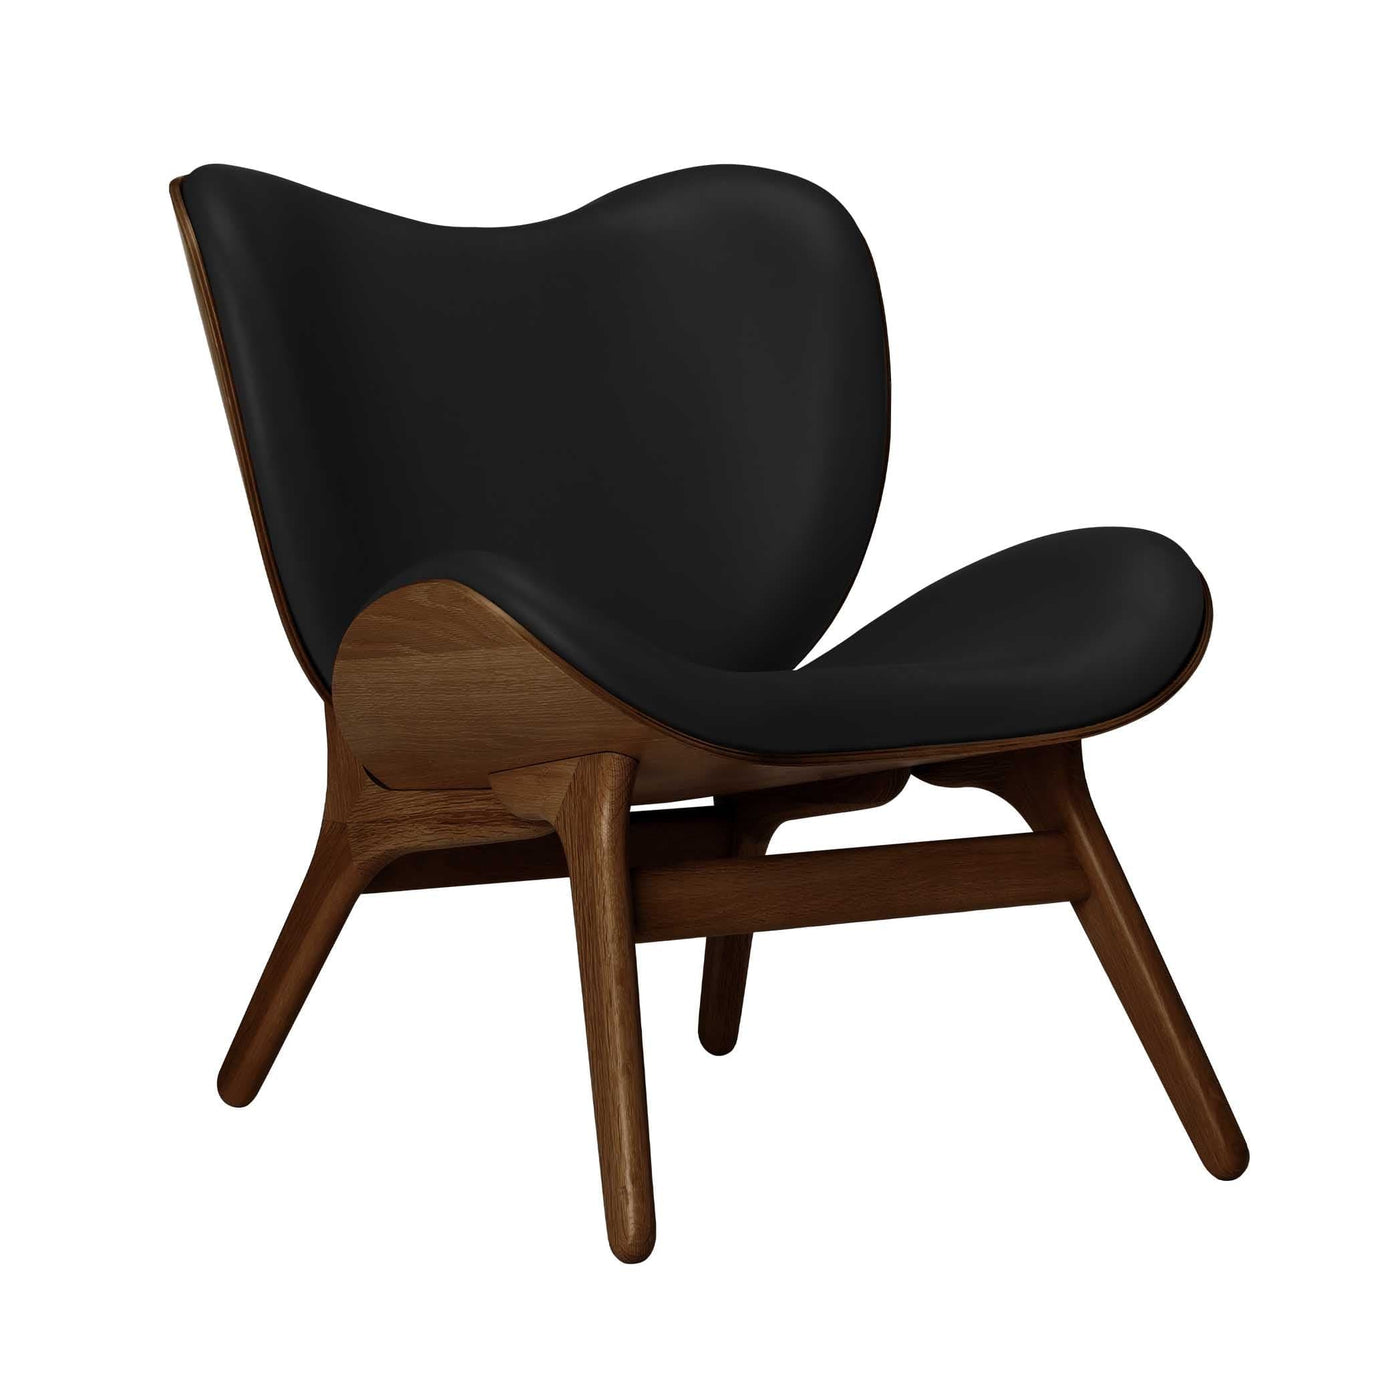 Umage A Conversation Piece Low, fauteuil confortable avec dossier bas, en bois et tissu, chêne foncé, cuir noir